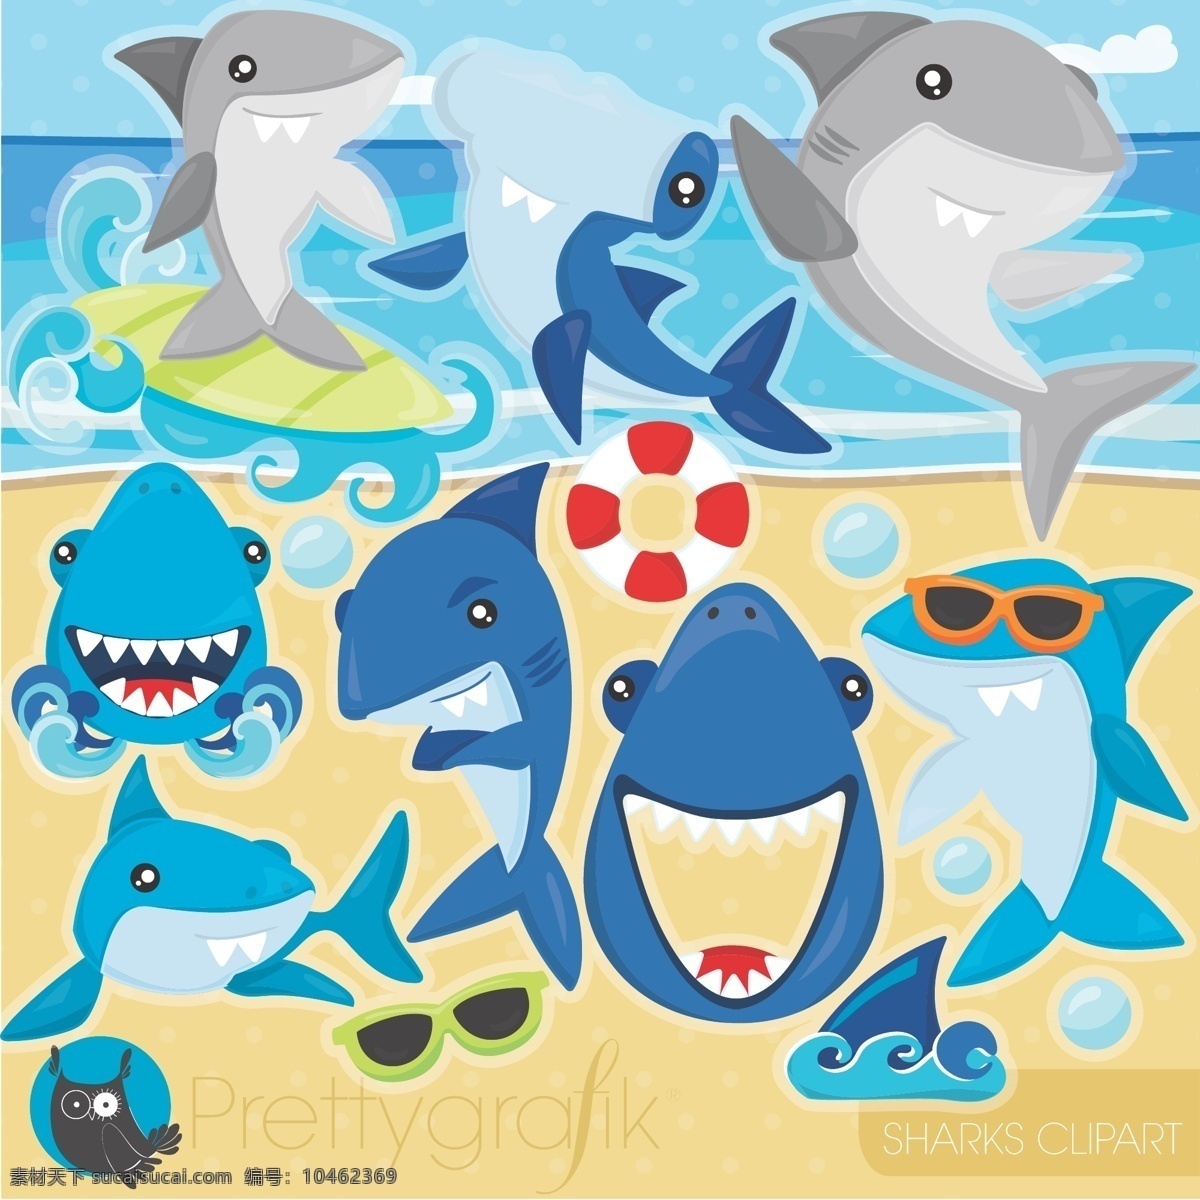 卡通 可爱 鲨鱼 儿童 人物 背景 矢量 动物 字母 商务 办公 图标 卡通设计